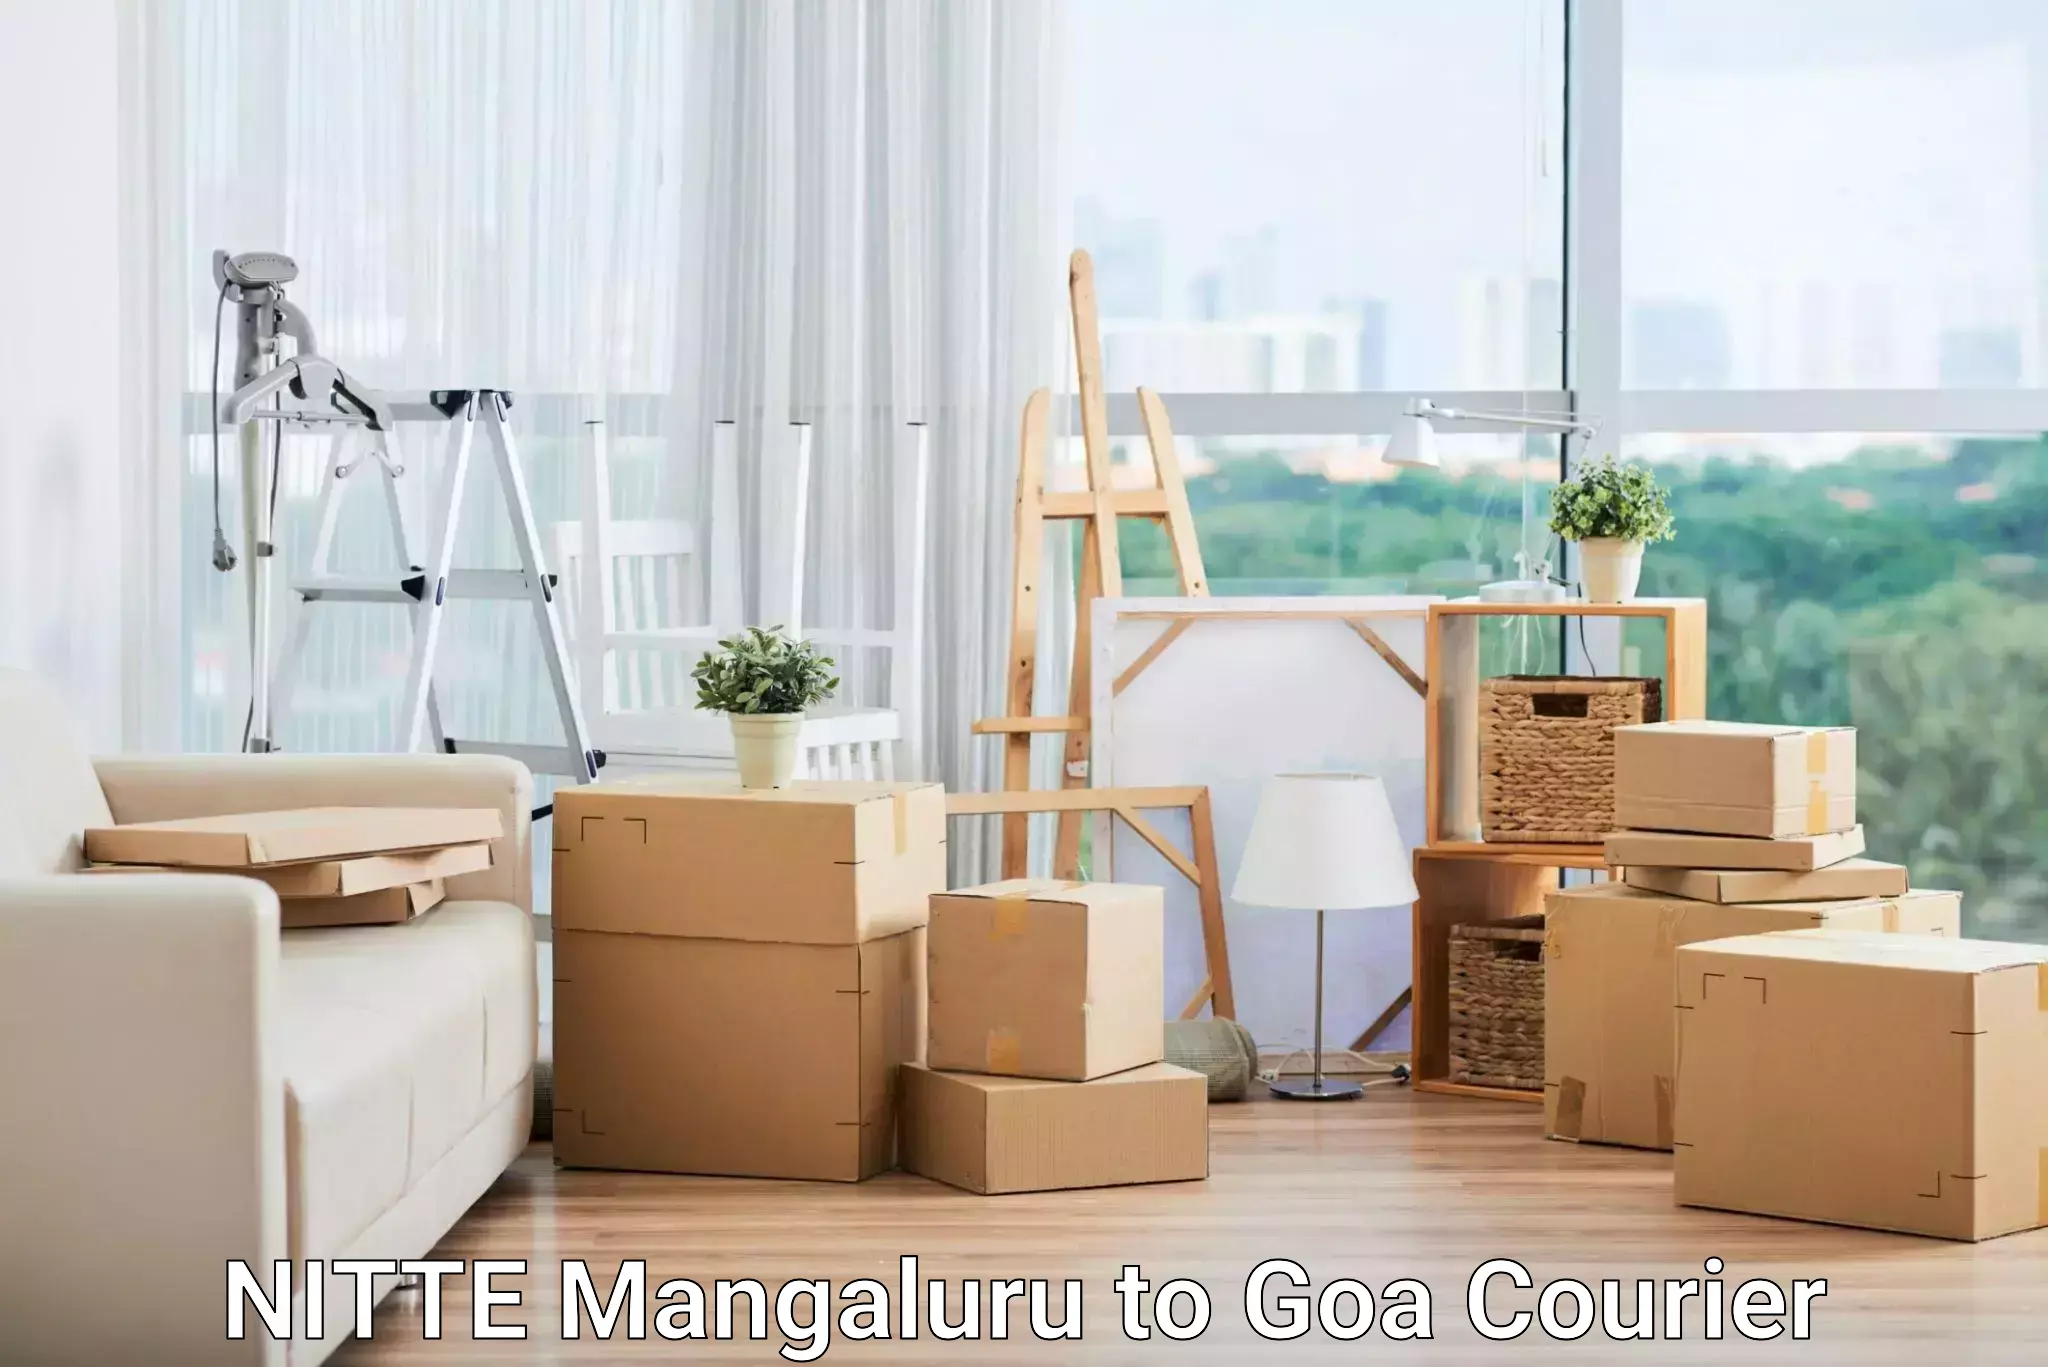 Global shipping solutions NITTE Mangaluru to Goa